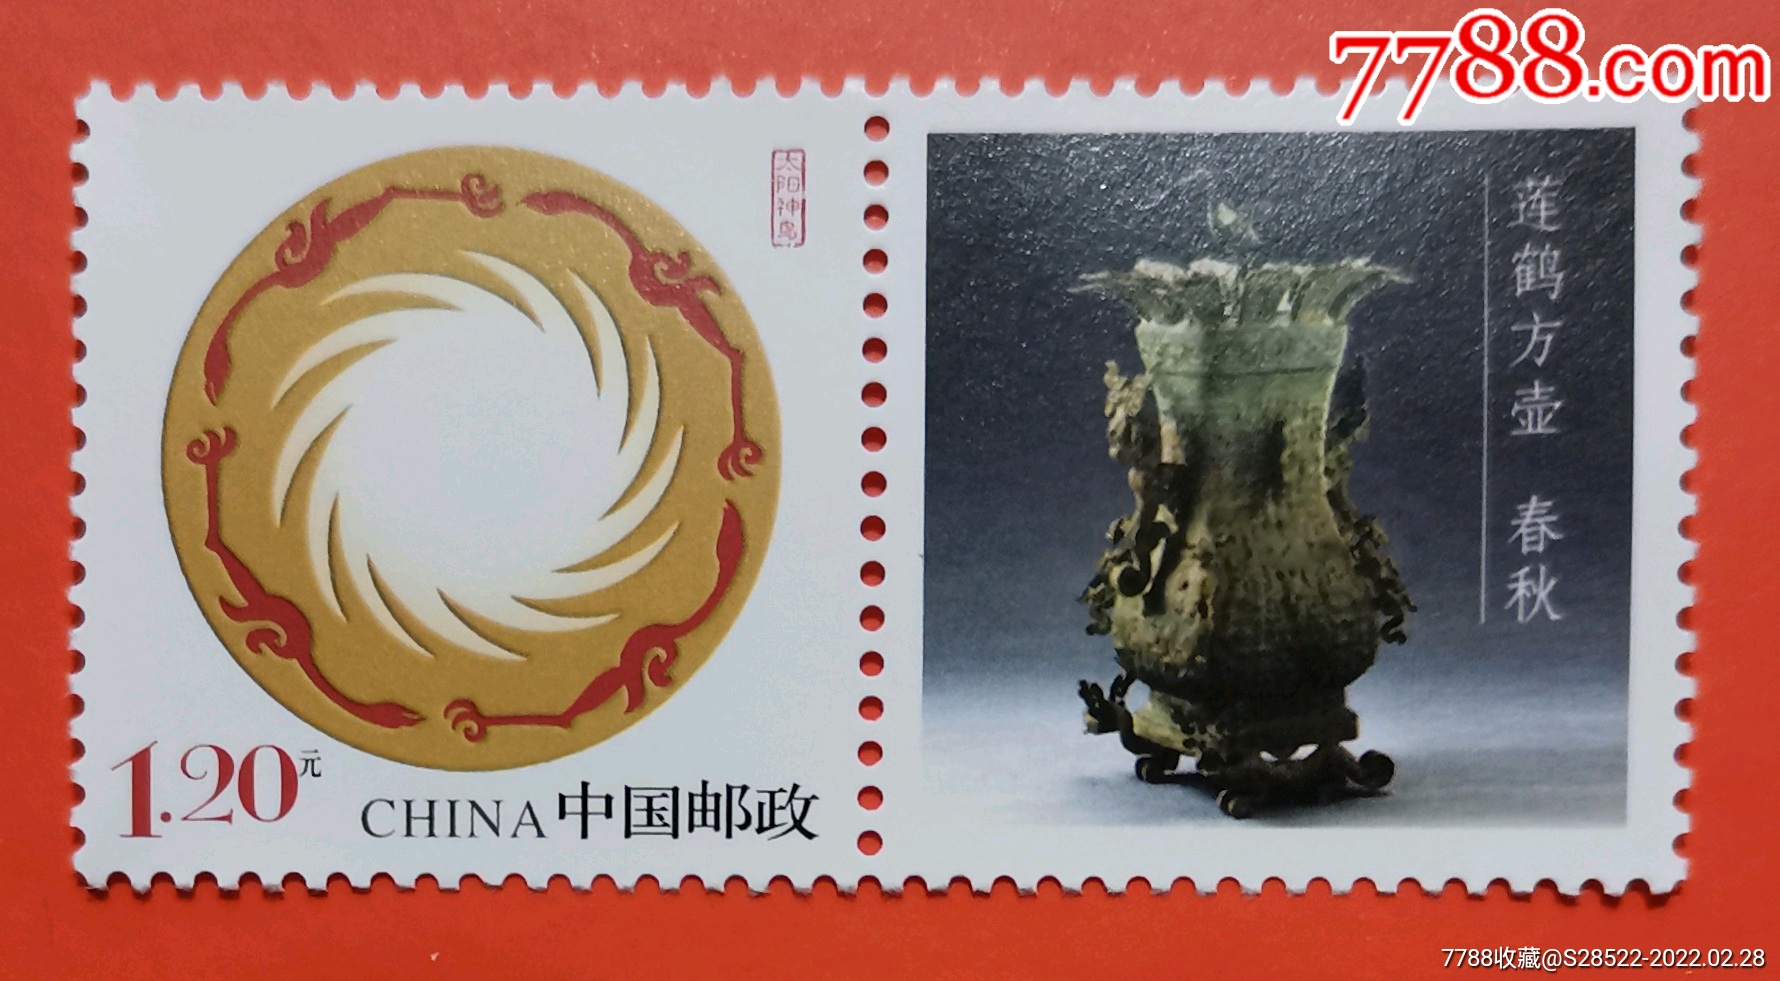 2017年春秋出土青铜器莲鹤方壶河南博物院镇馆之宝个性化邮票